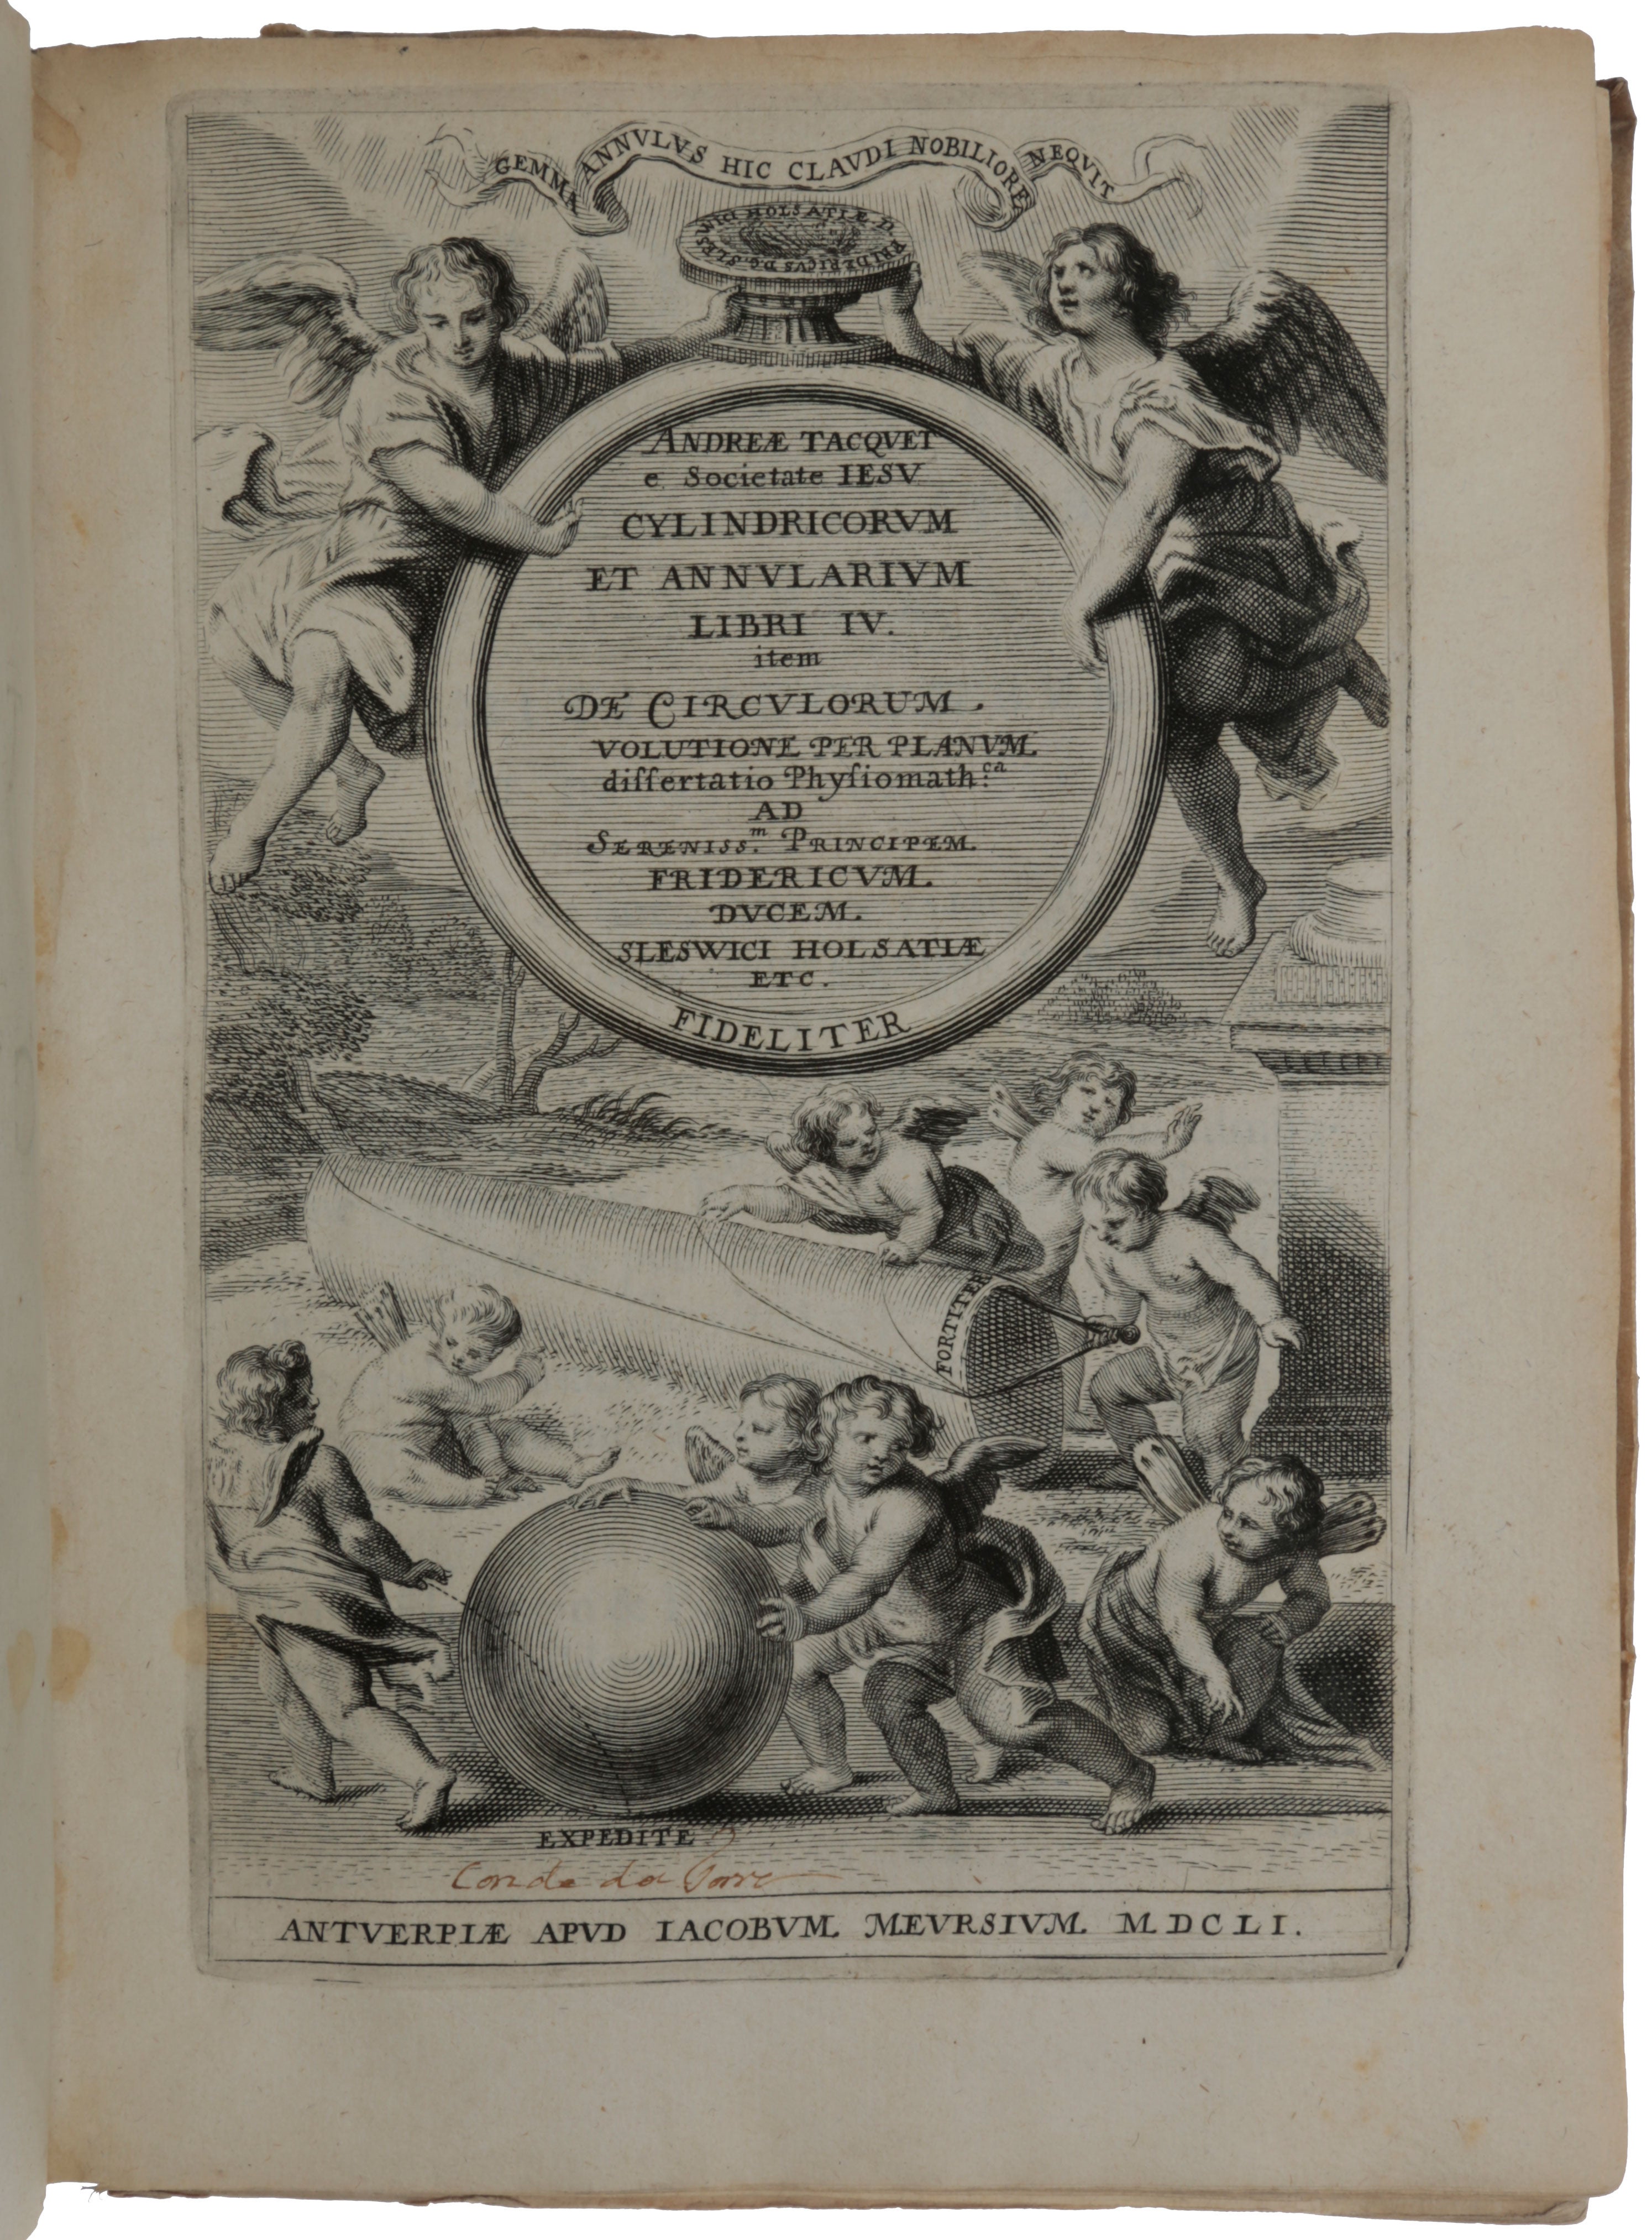 Item #5427 Cylindricorum et annularium libri IV: item De circulorum volutione per planum, dissertatio physiomath[i]ca. André TACQUET, or Andreas.